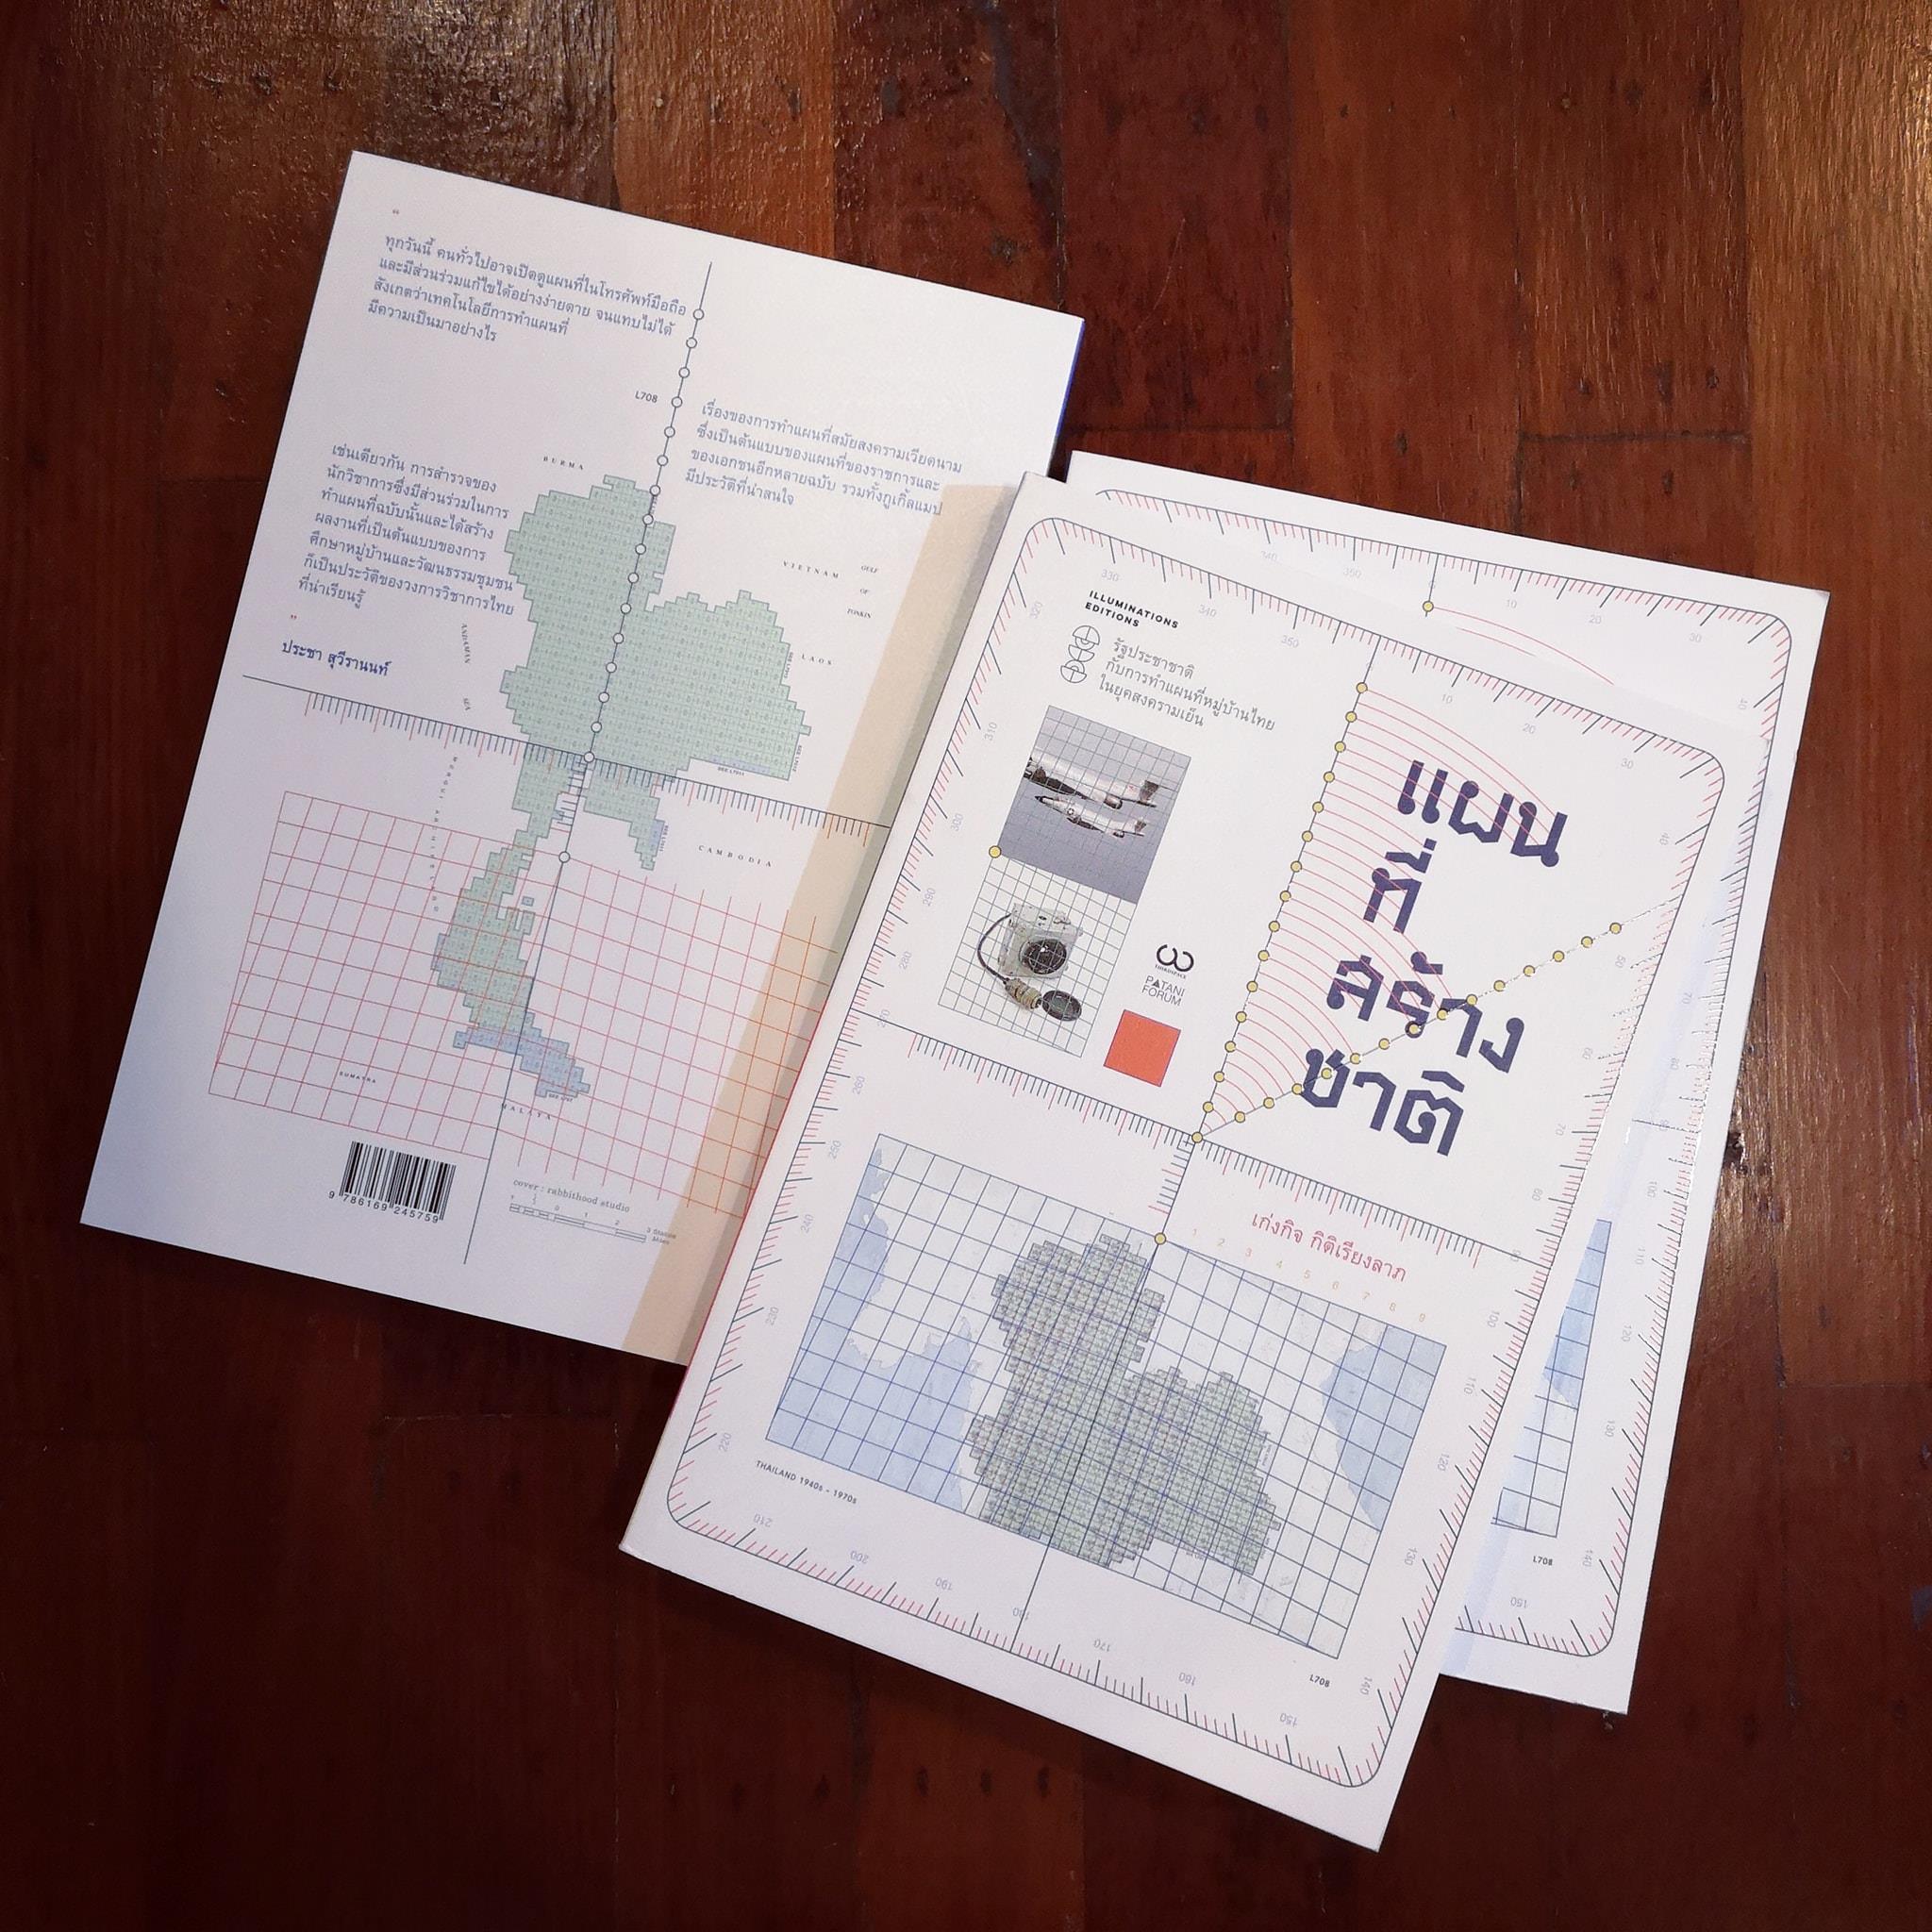 แผนที่สร้างชาติ: รัฐประชาชาติ กับการทำแผนที่หมู่บ้านไทย ในยุคสงครามเย็น เก่งกิจ กิติเรียงลาภ Illuminations Editions